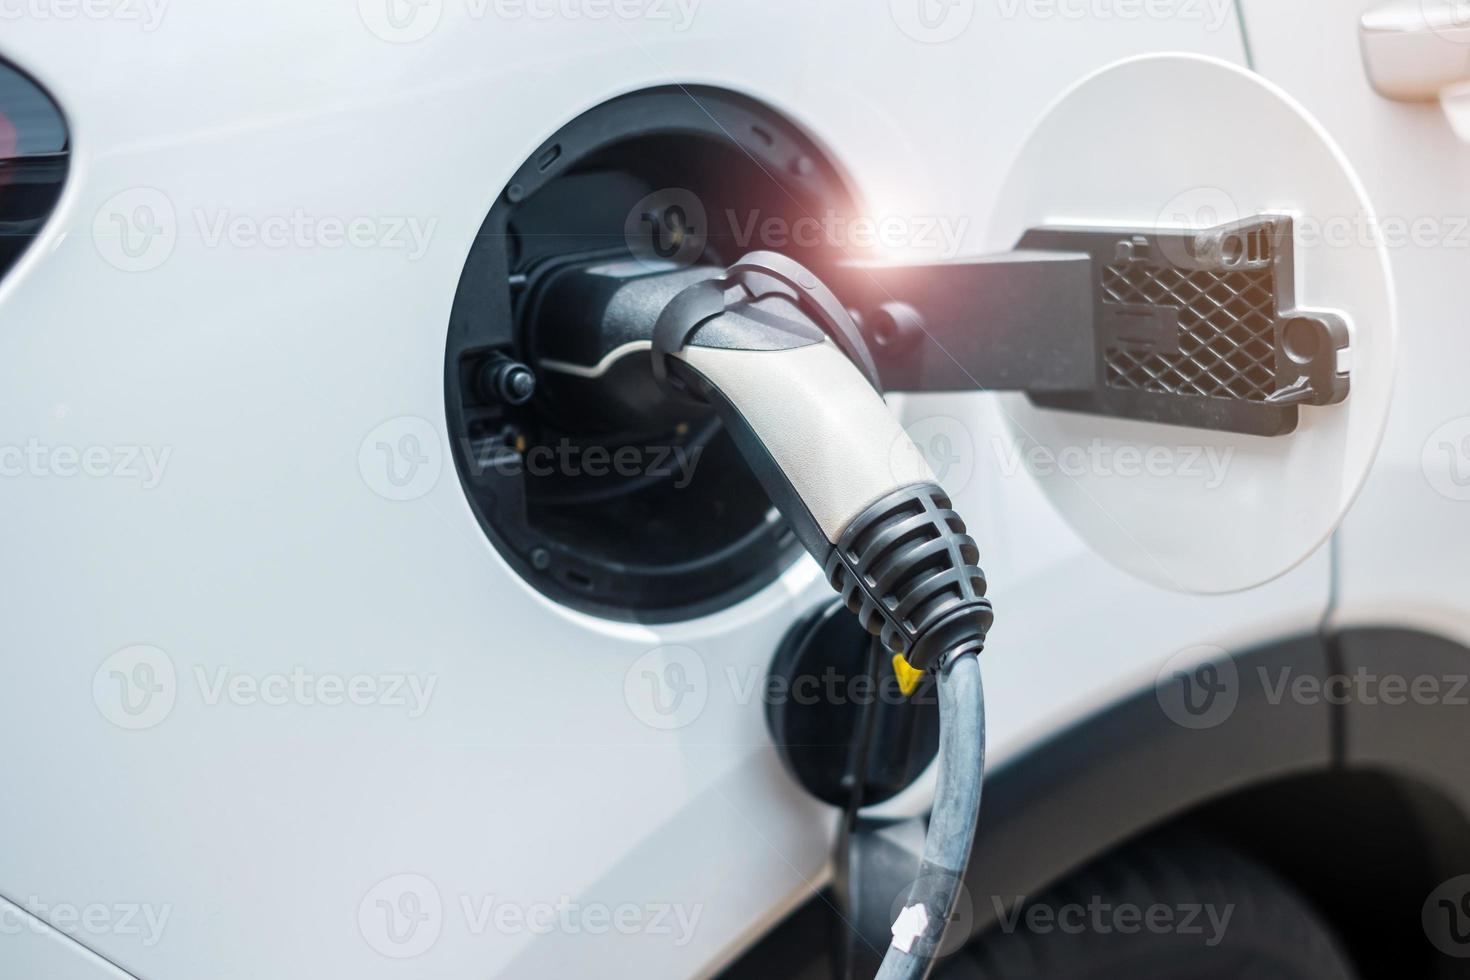 batterie de charge de voiture électrique à la station de charge ev ou à la maison. énergie verte, alternative écologique, technologies et concepts environnementaux photo